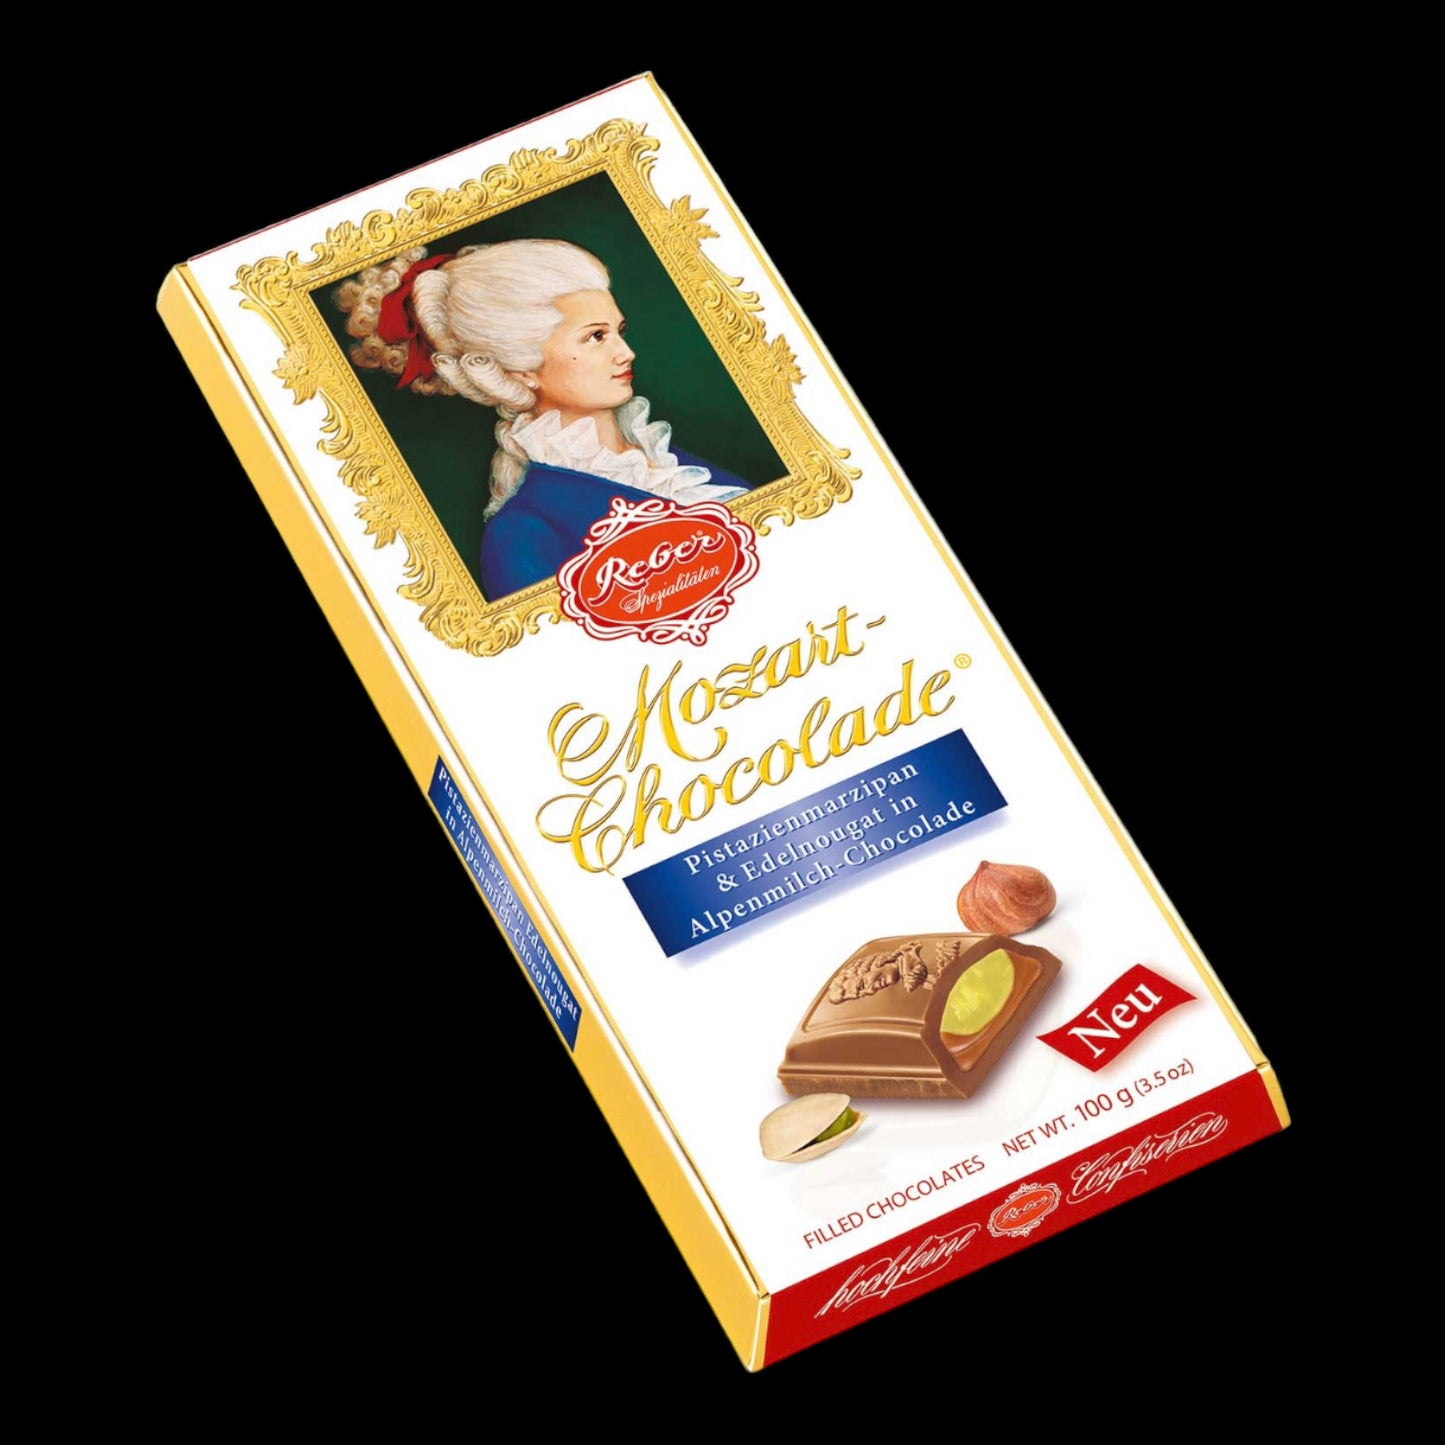 Reber Mozart-Chocolade Pistazienmarzipan & Edelnougat in Alpenmilch-Chocolade 100g